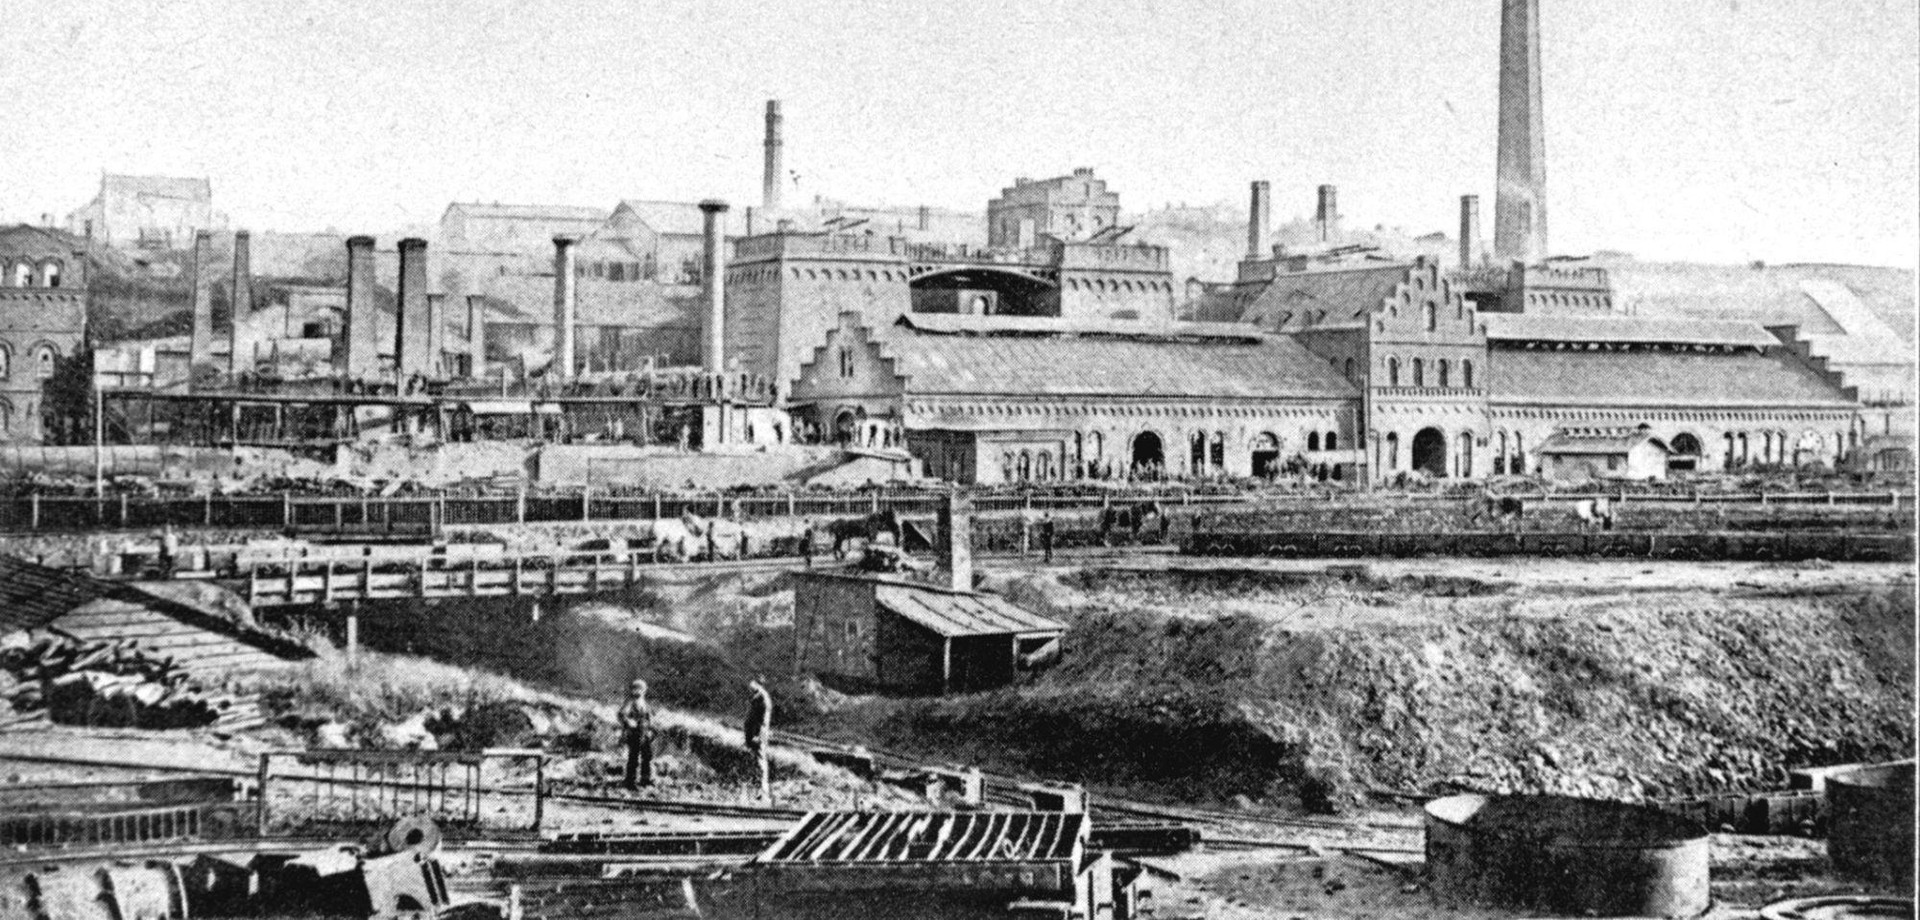 Ansicht der Henrichshütte von 1874.